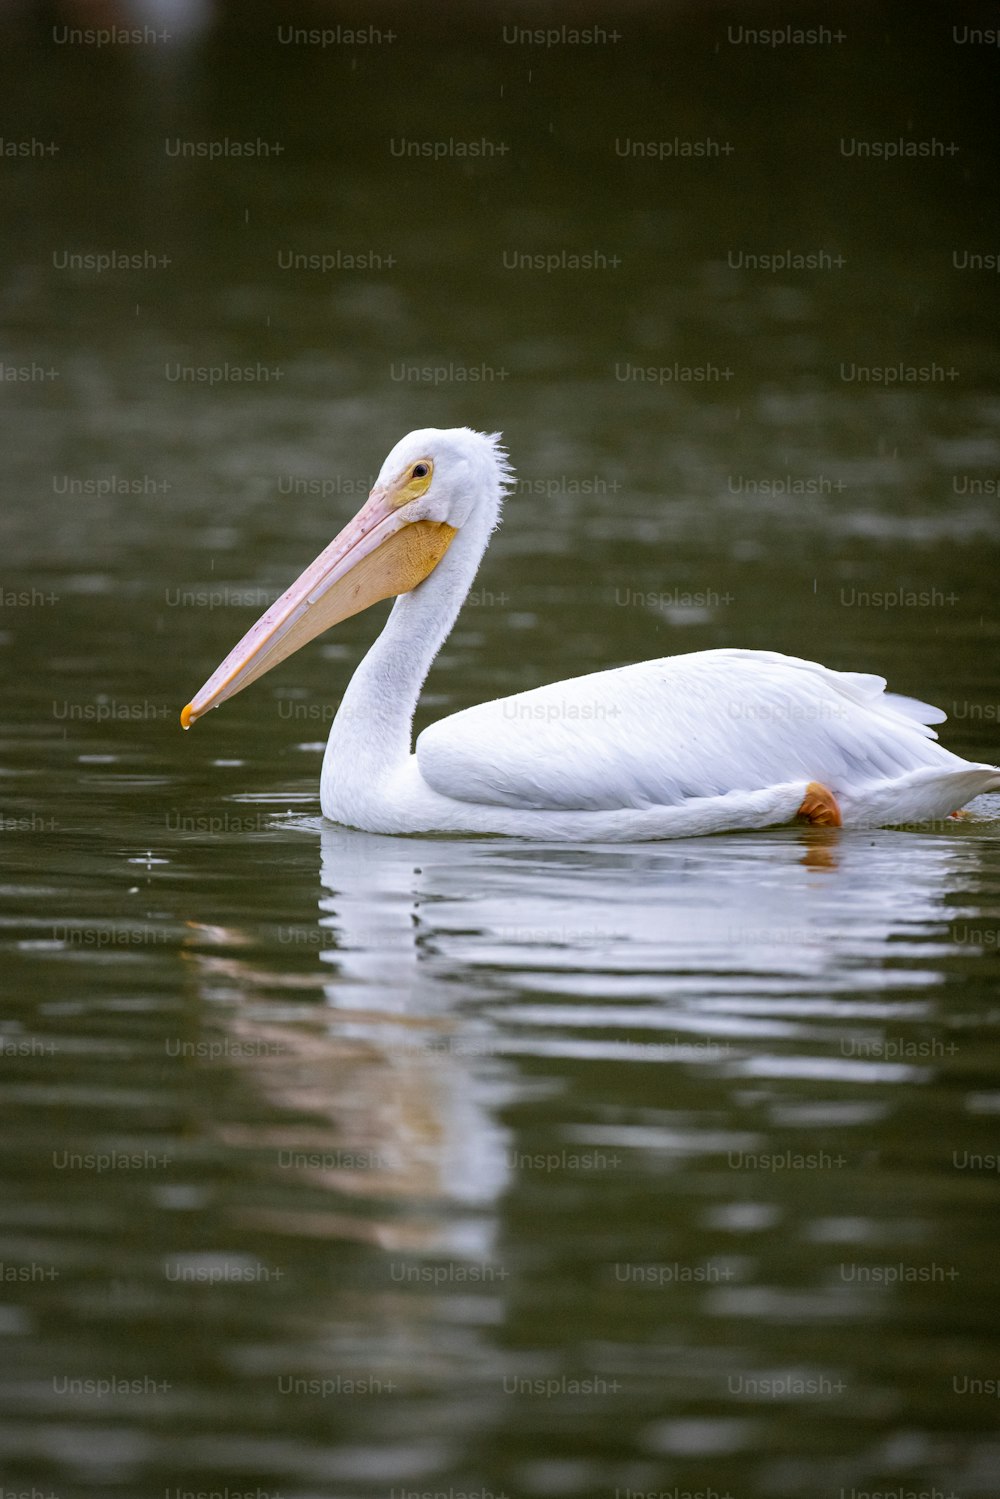 Un gran pájaro blanco flotando sobre un cuerpo de agua